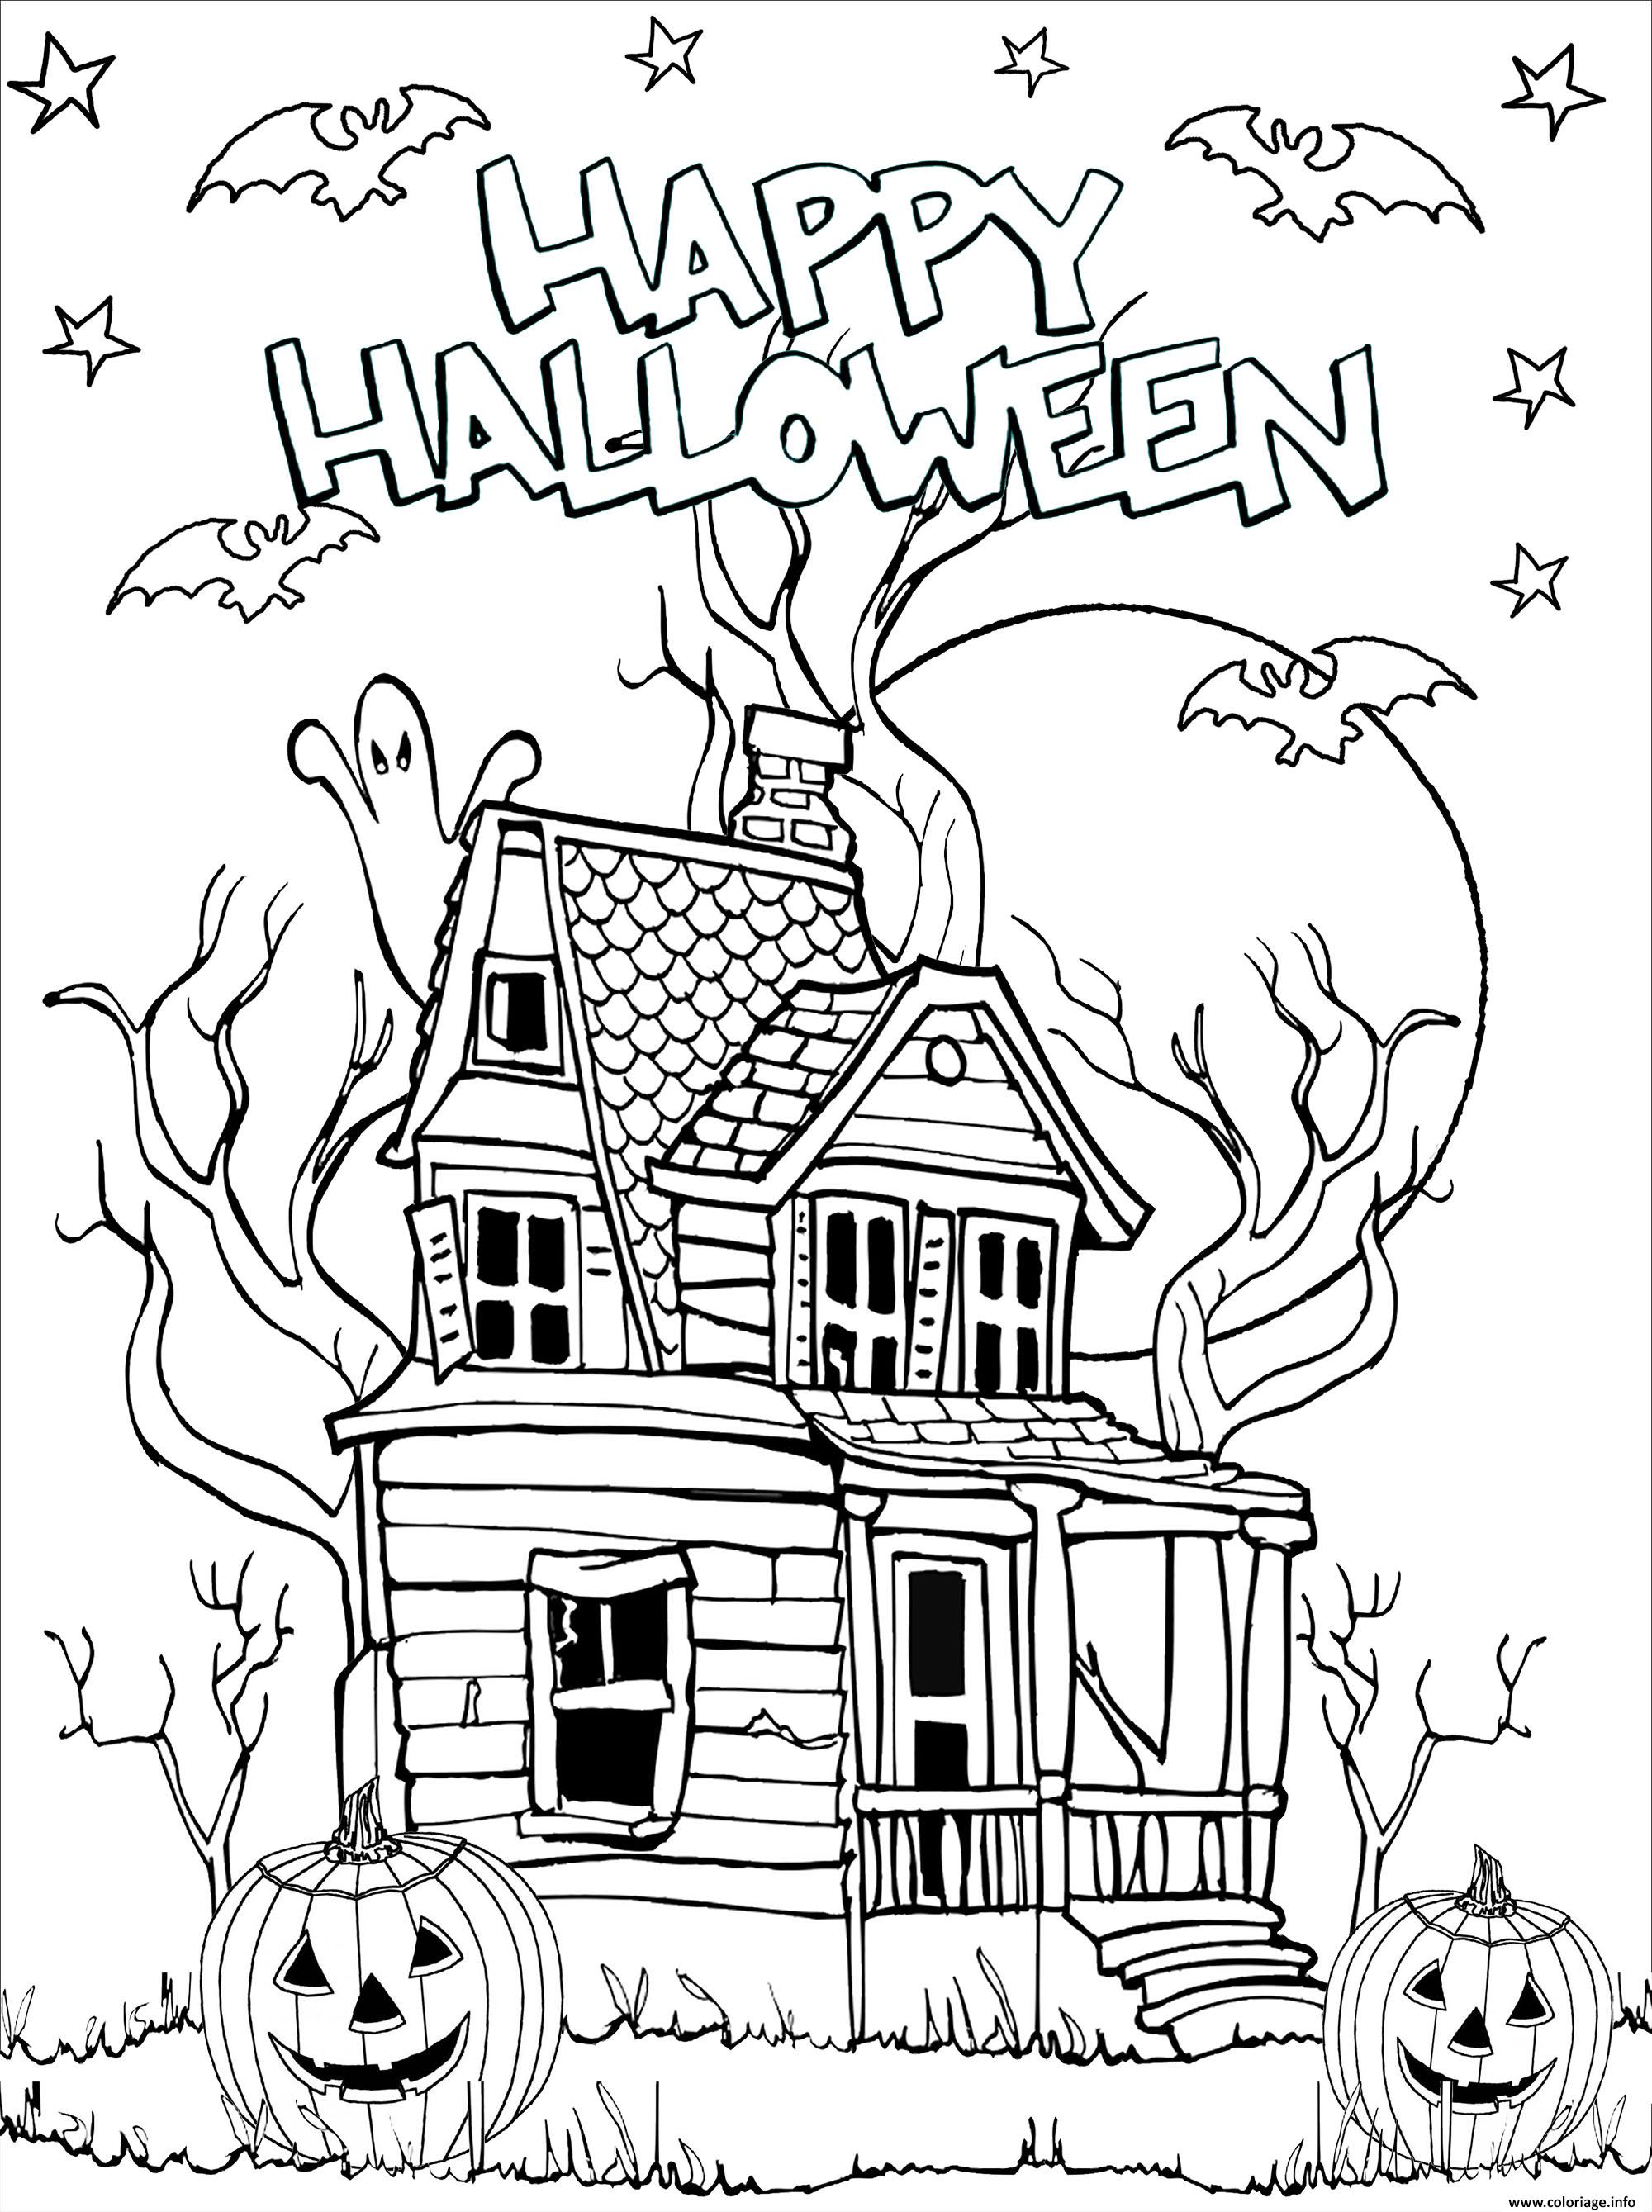 Dessin joyeuse halloween maison hantee qui fait peur Coloriage Gratuit à Imprimer